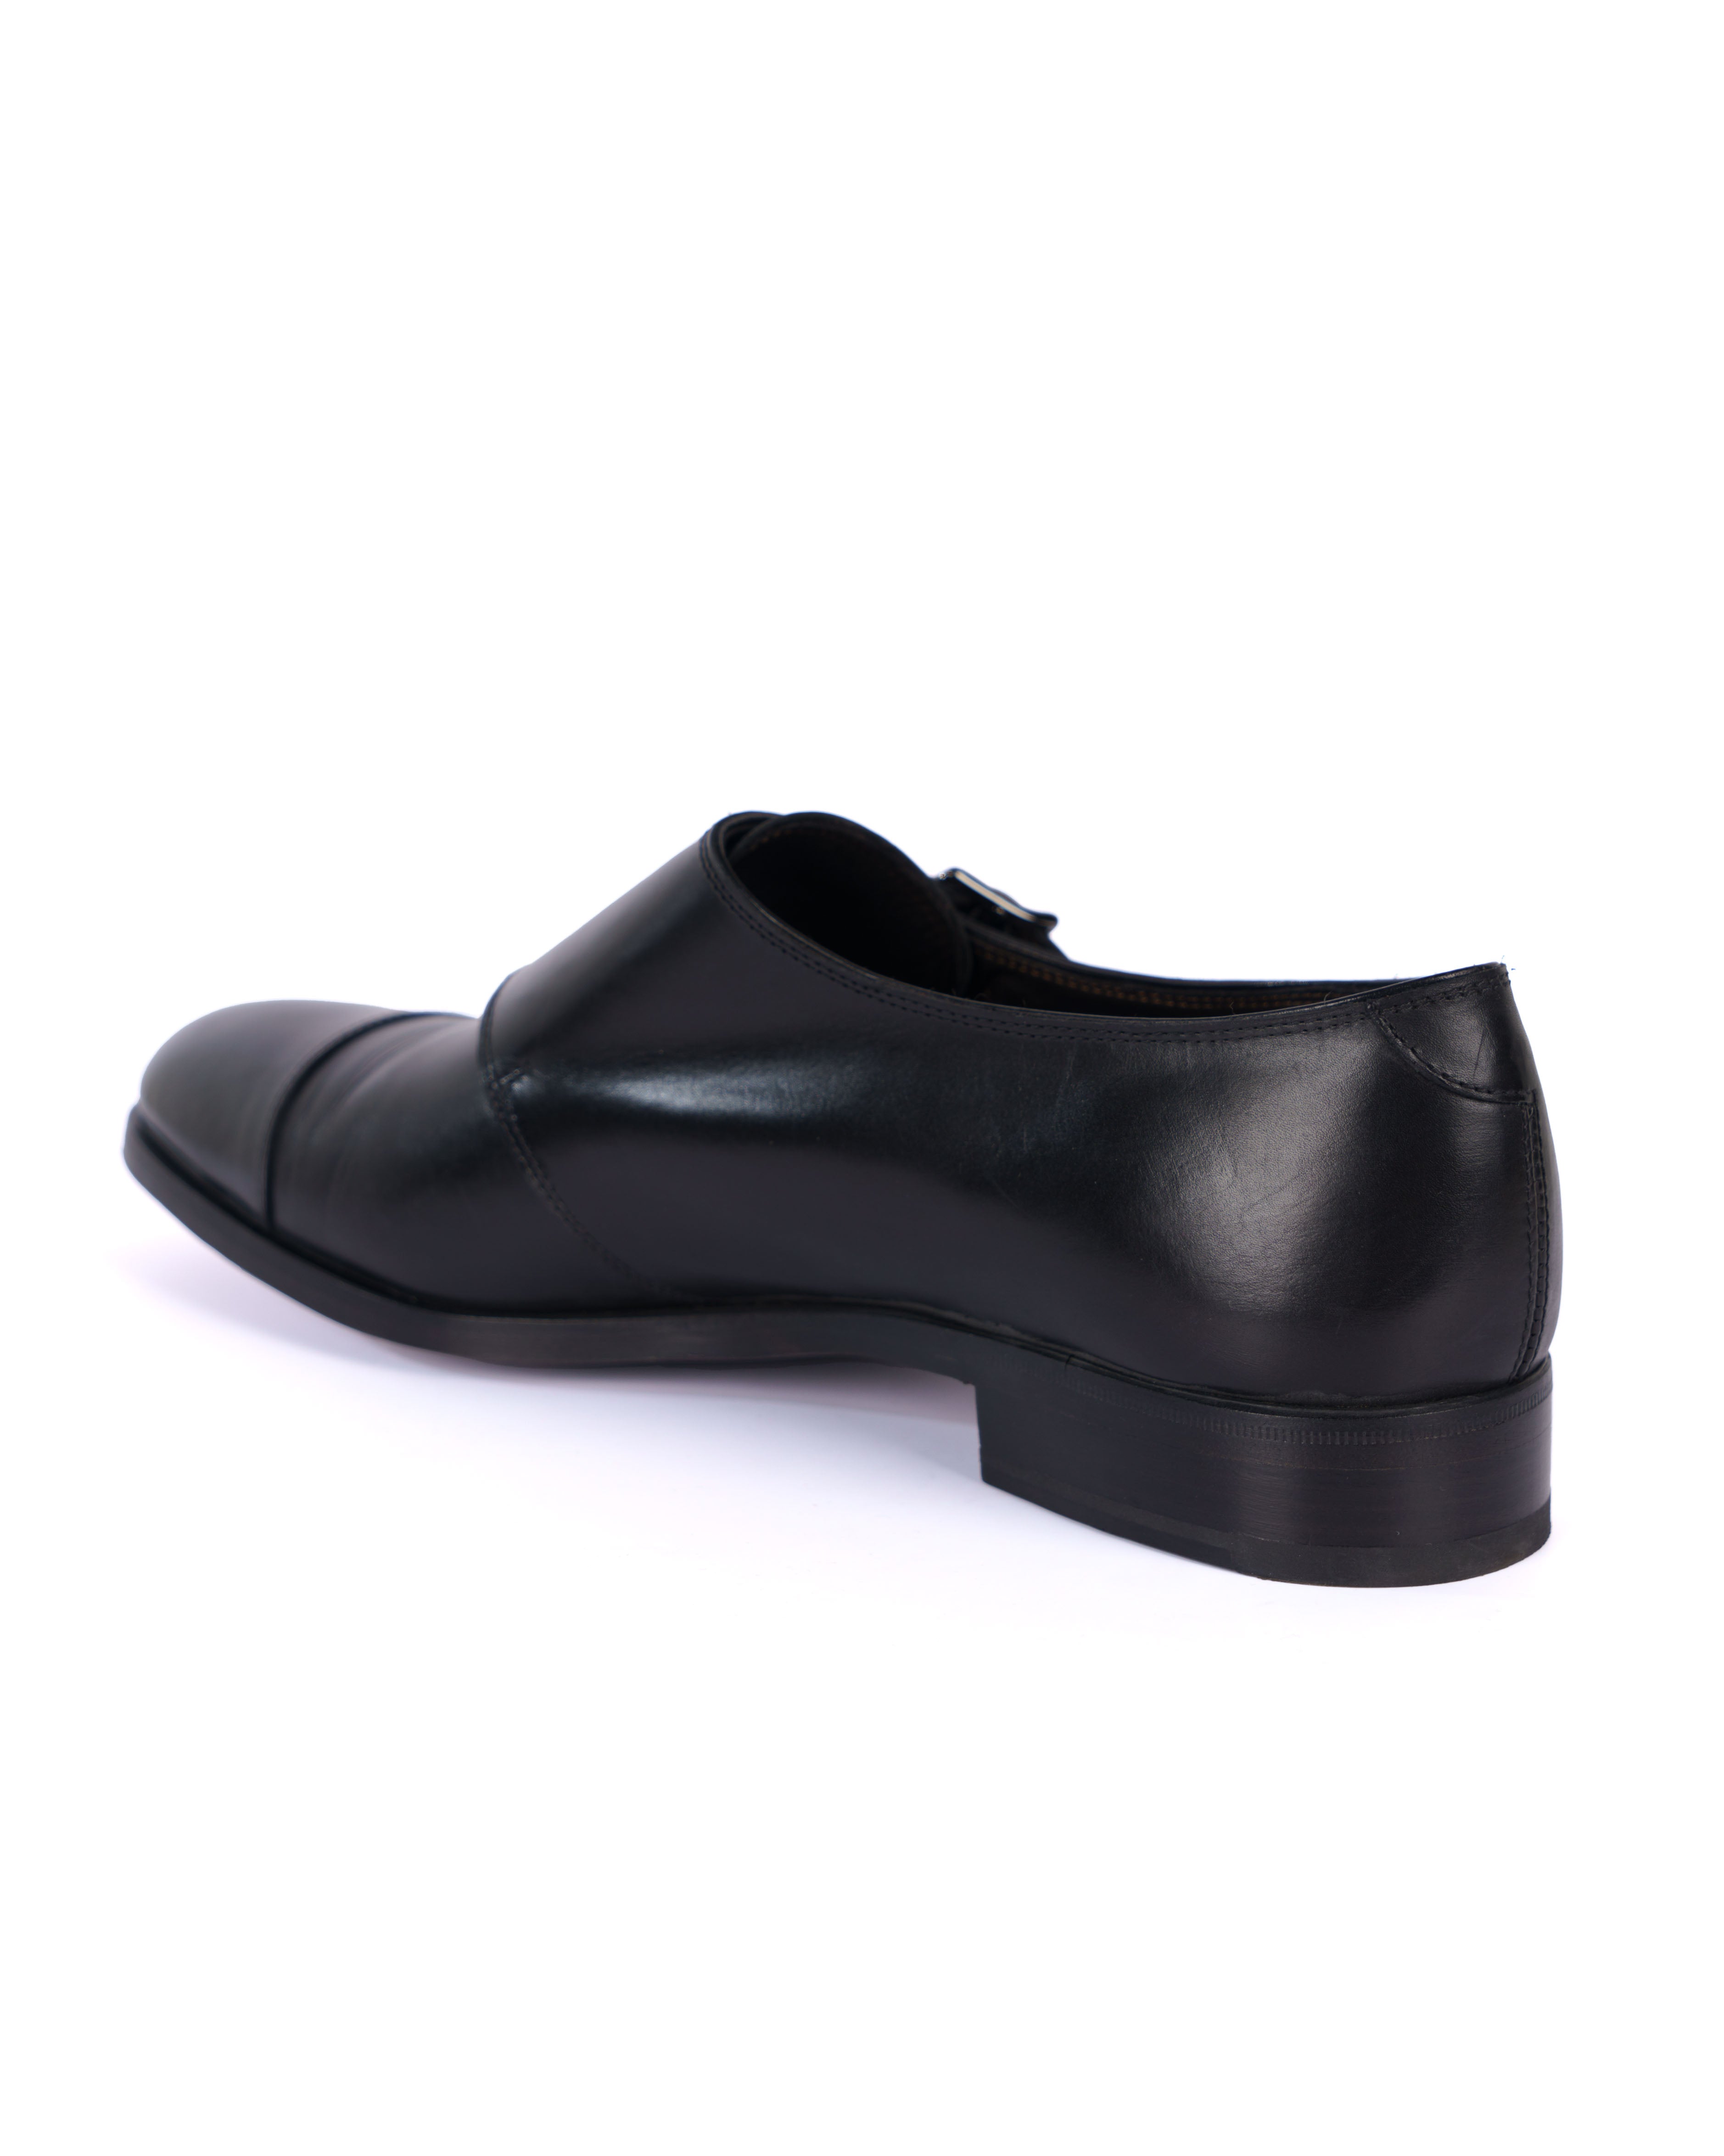 Black Monk Shoes